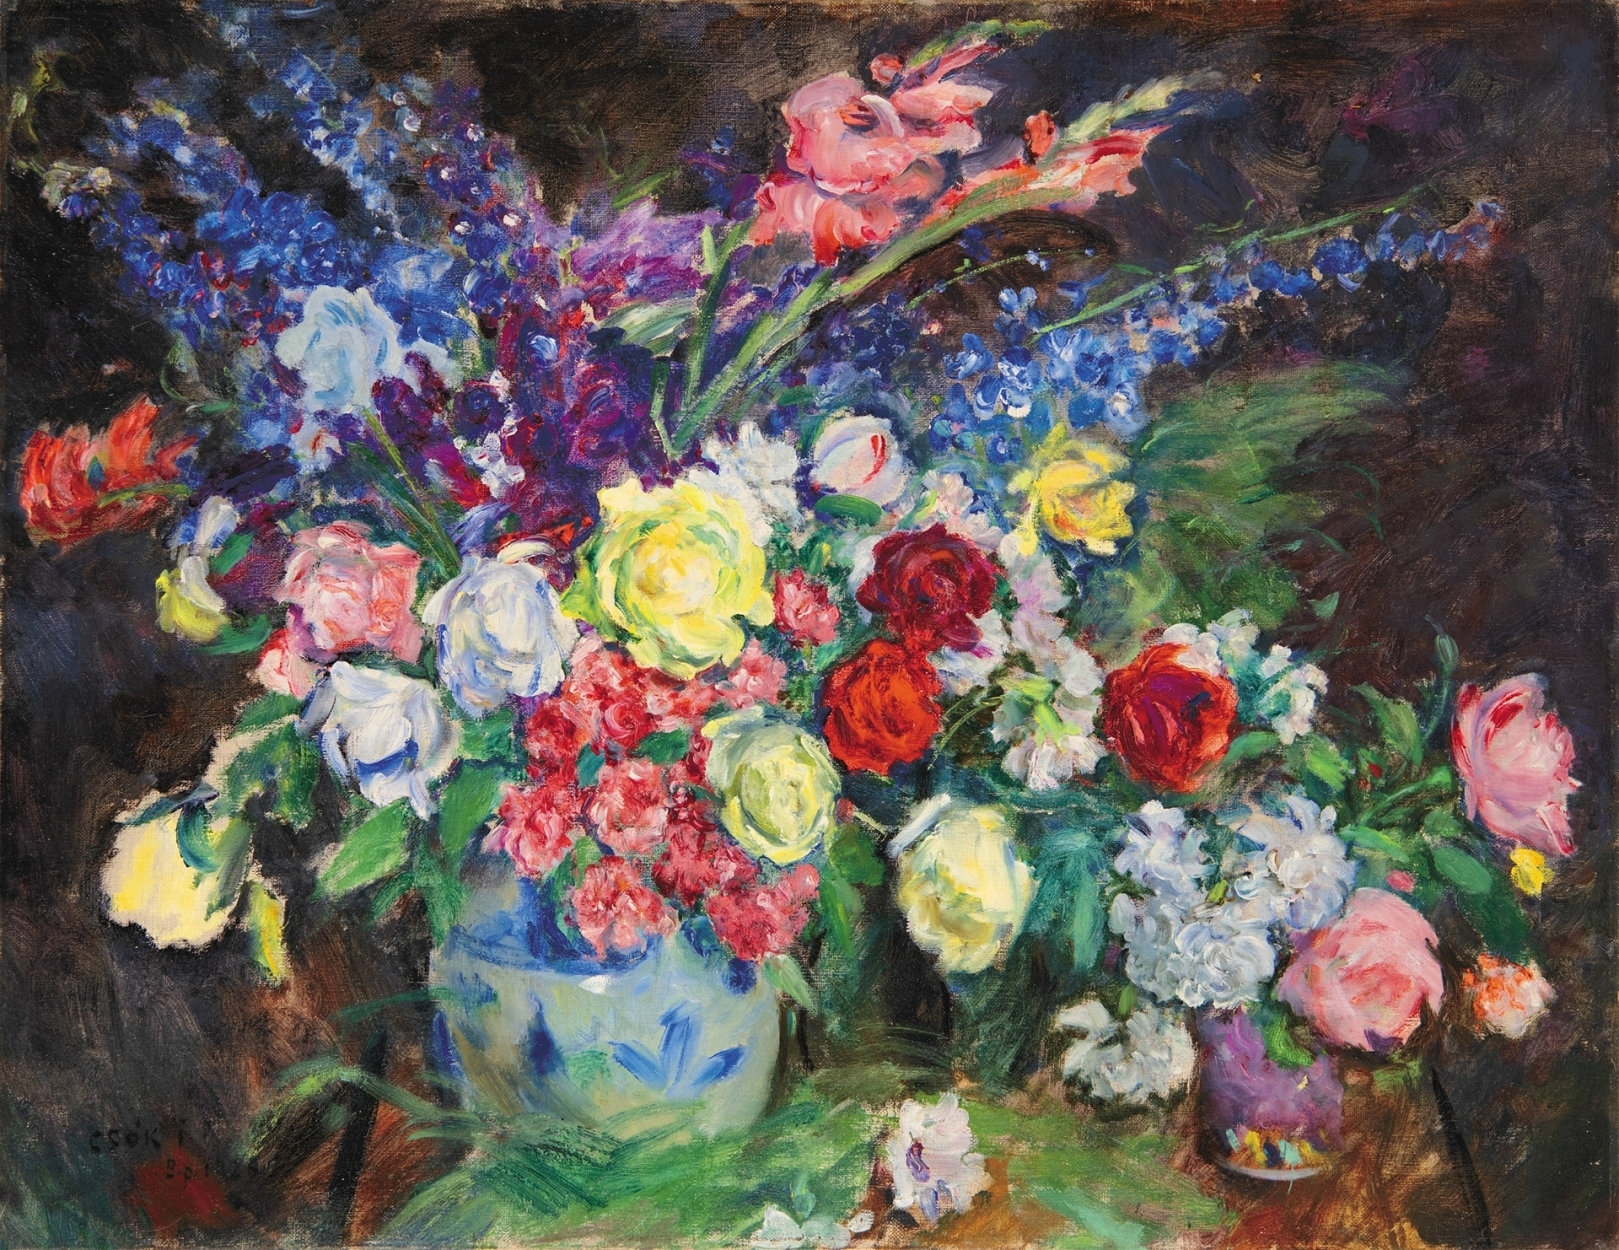 Csók István (1865-1961) Still-life with Flowers, 1926